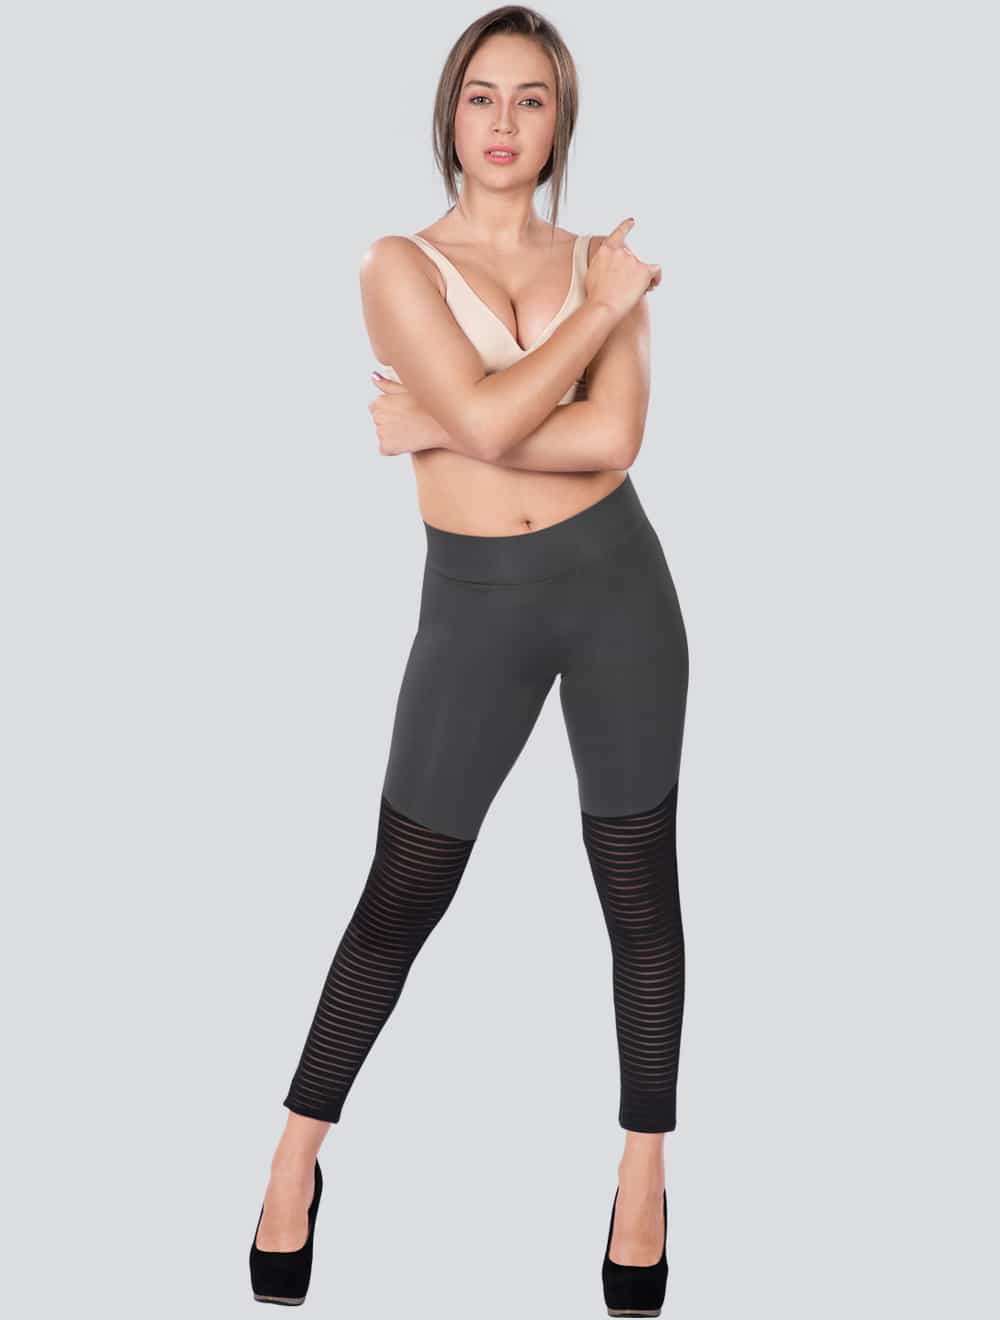 Dermawear Women's Activewear Workout Leggings With Pocket - Brown